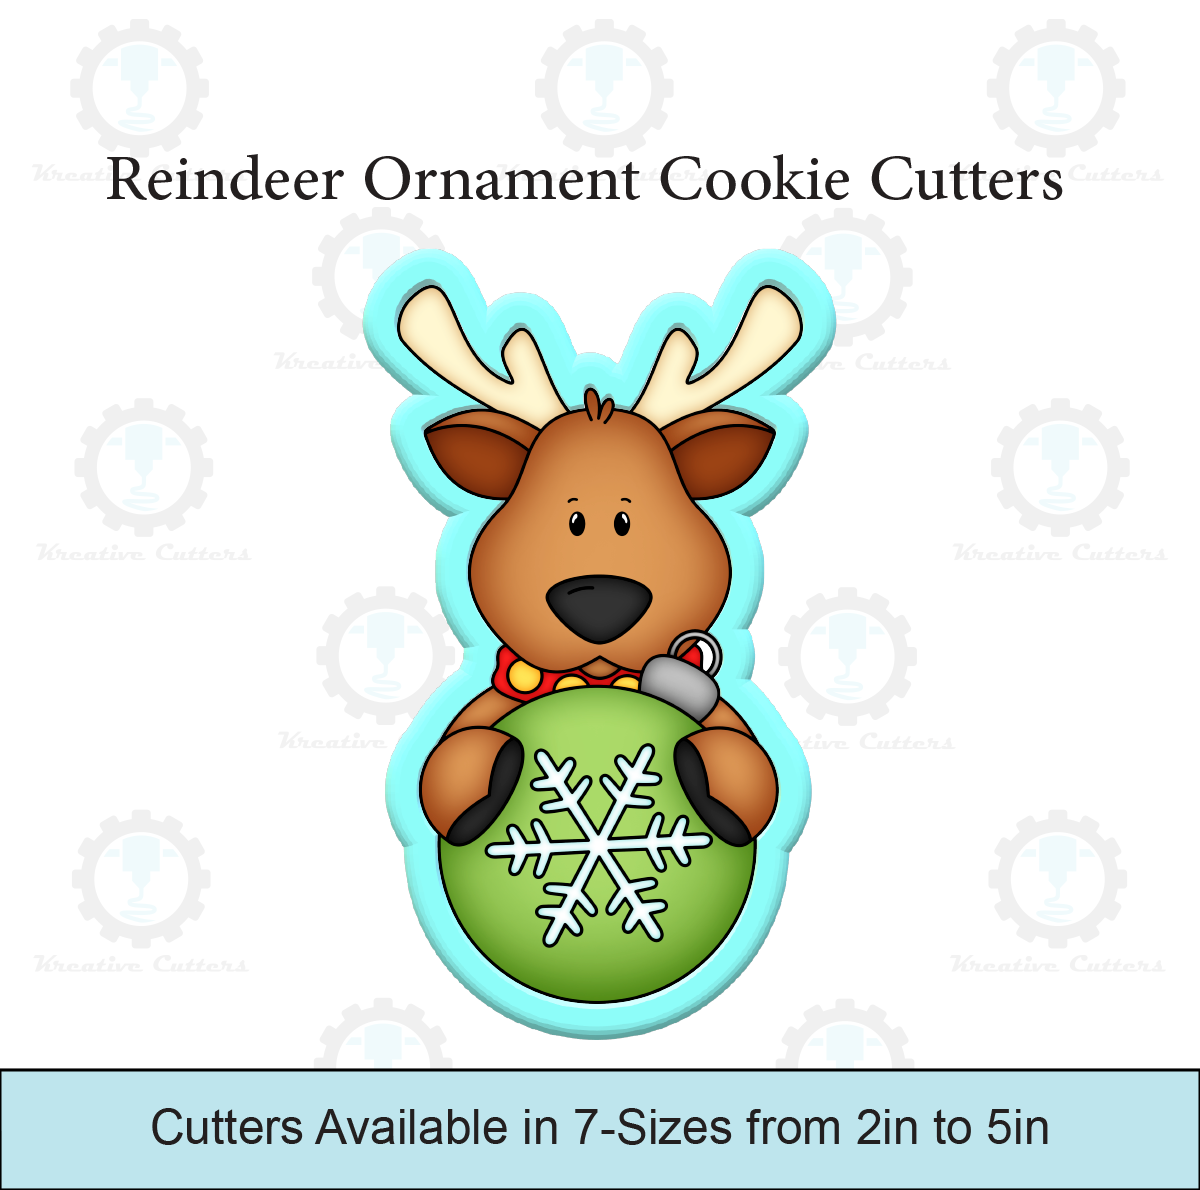 Reindeer Ornament Cookie Cutters